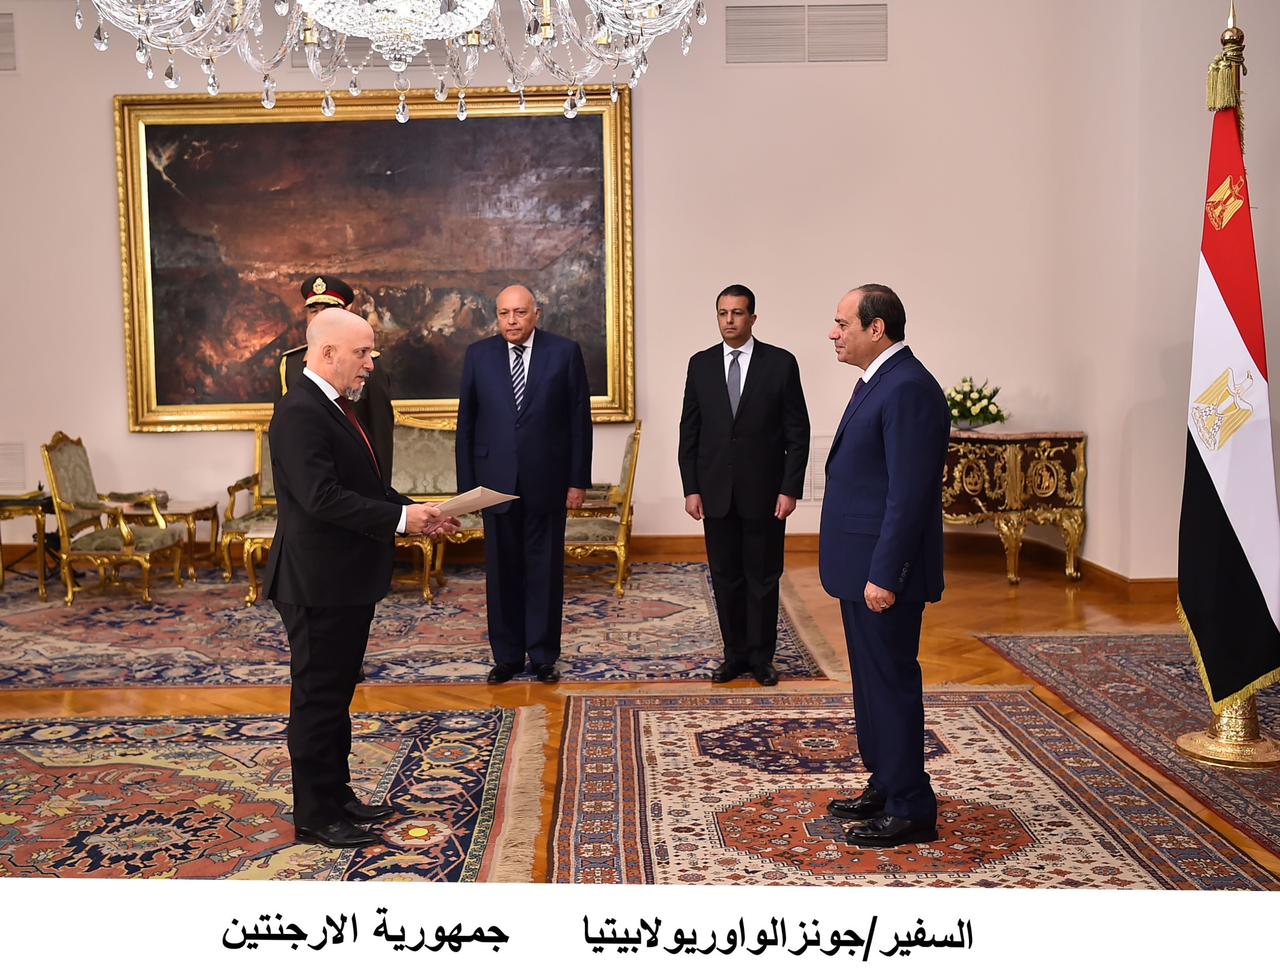  الرئيس السيسي يتسلم أوراق اعتماد السفراء الجدد